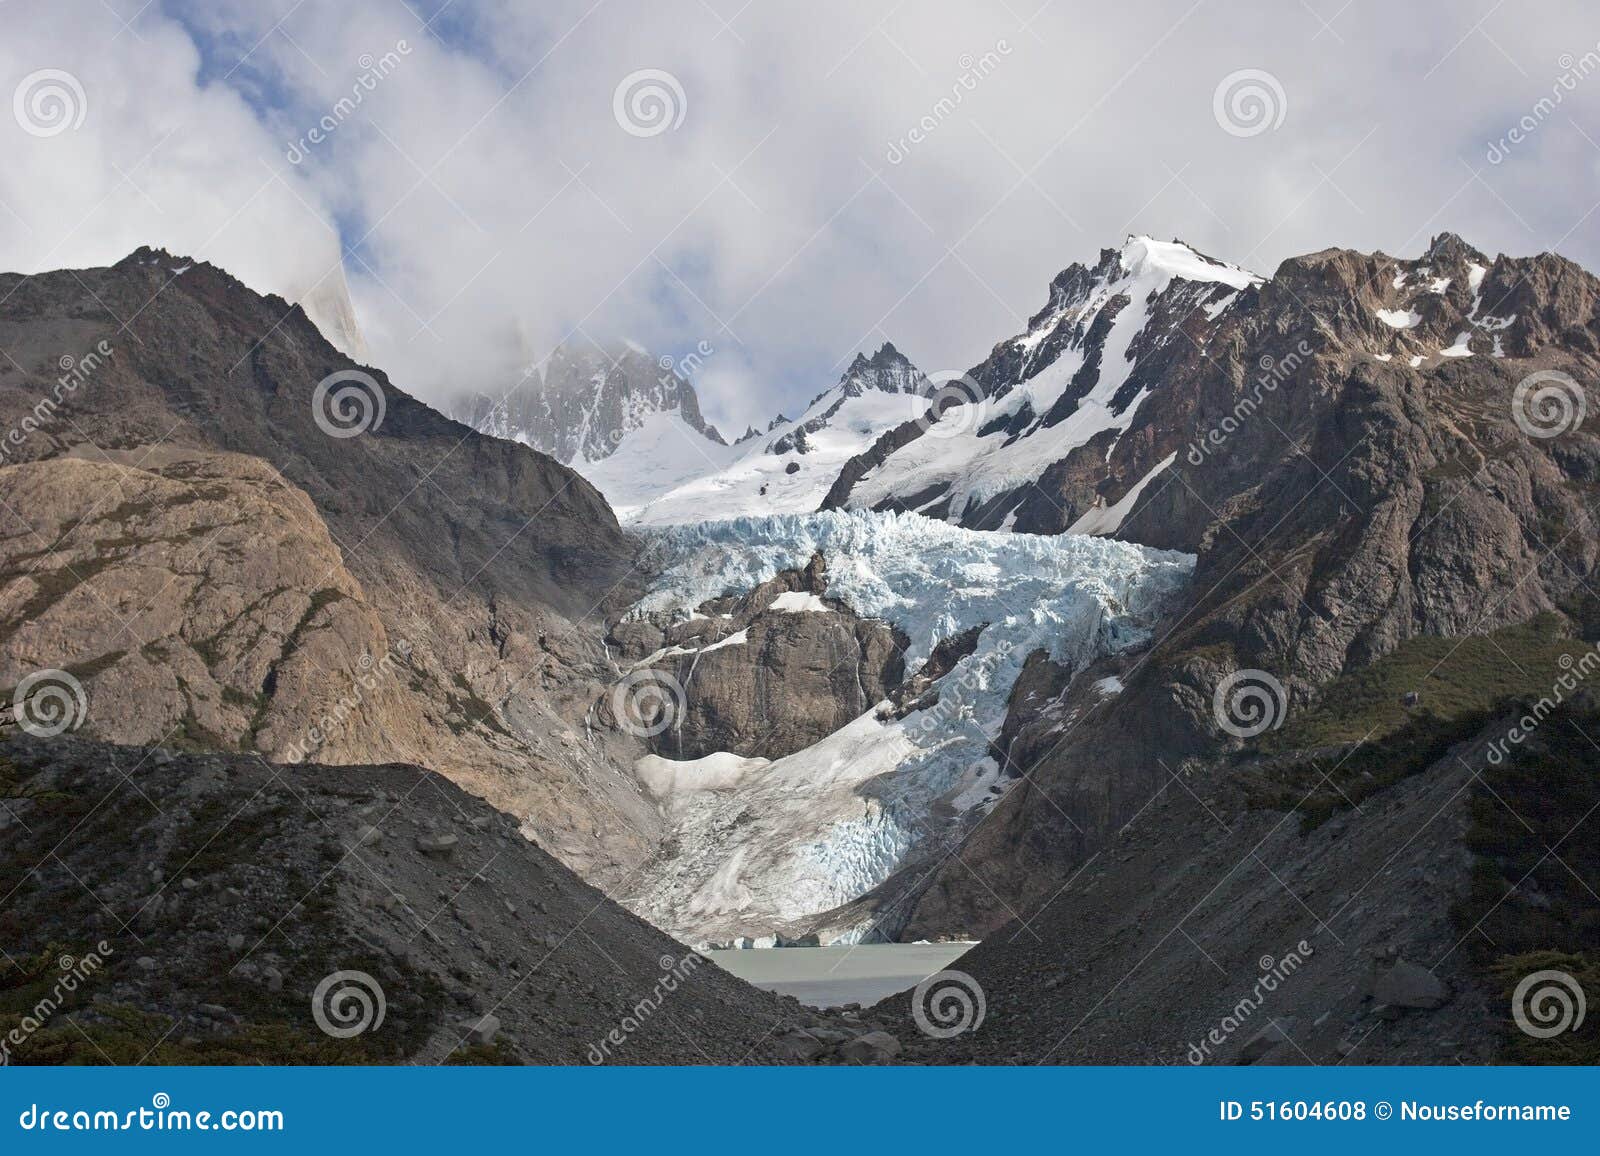 glaciar piedras blancas, patagonia, argentina